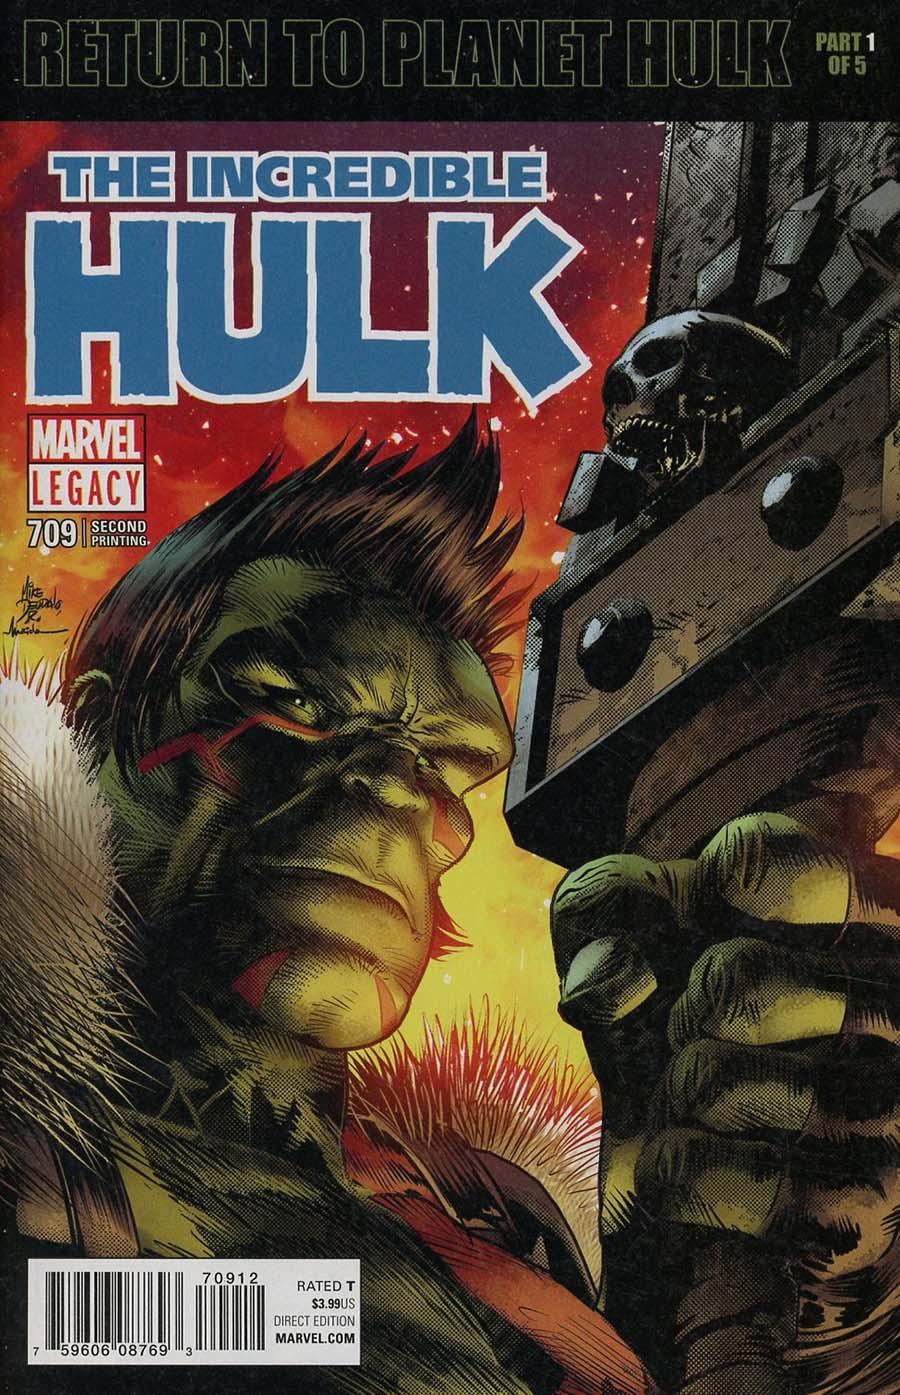 The Incredible Hulk Vol. 4 #709